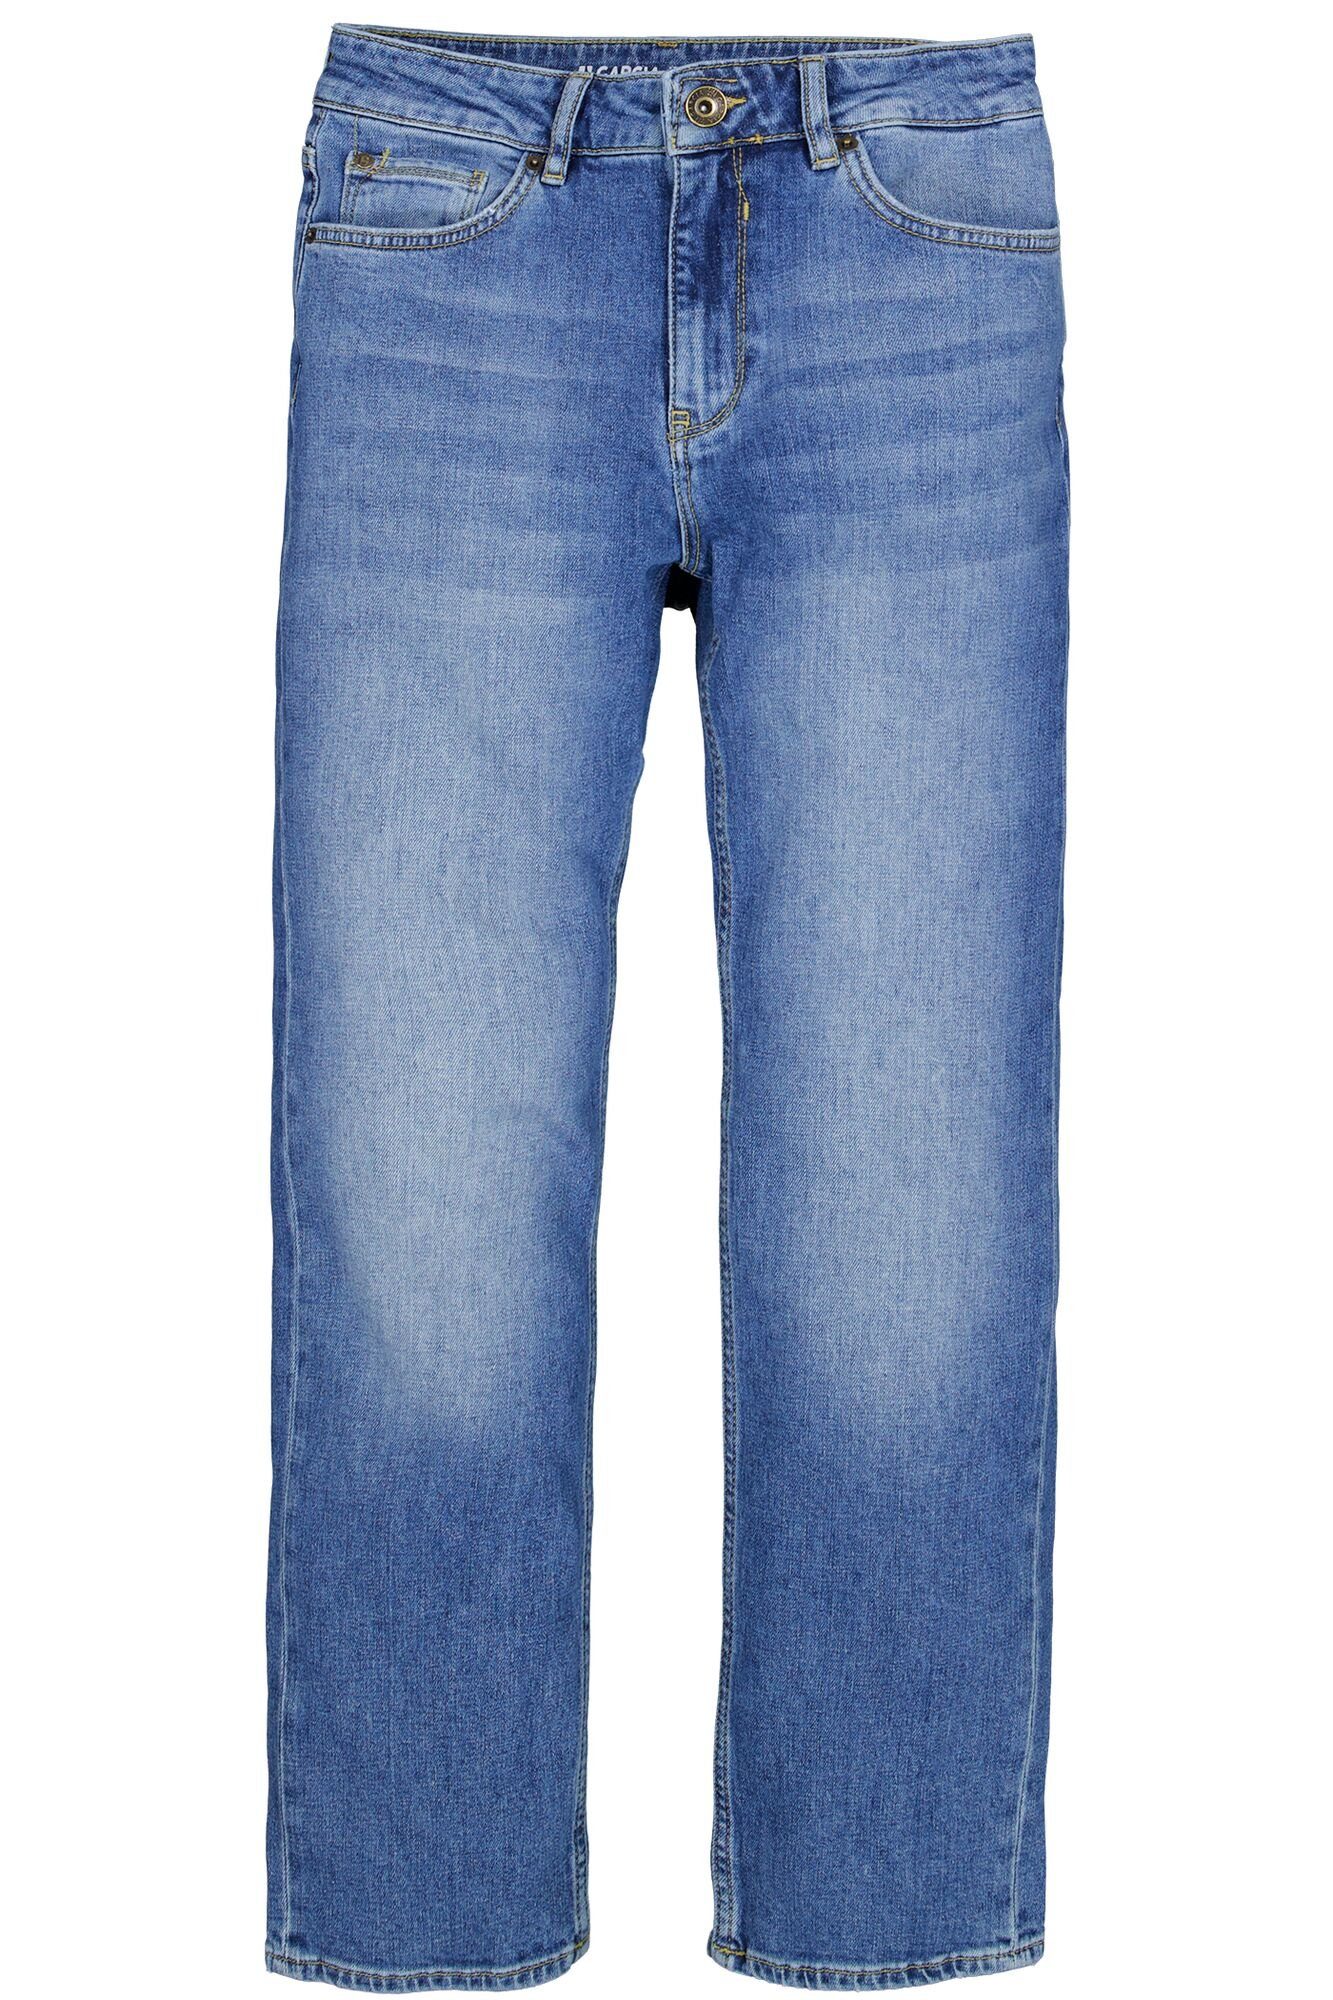 GARCIA JEANS Stretch-Jeans GARCIA LUISA medium blue used 295.5132 - Ragged Denim